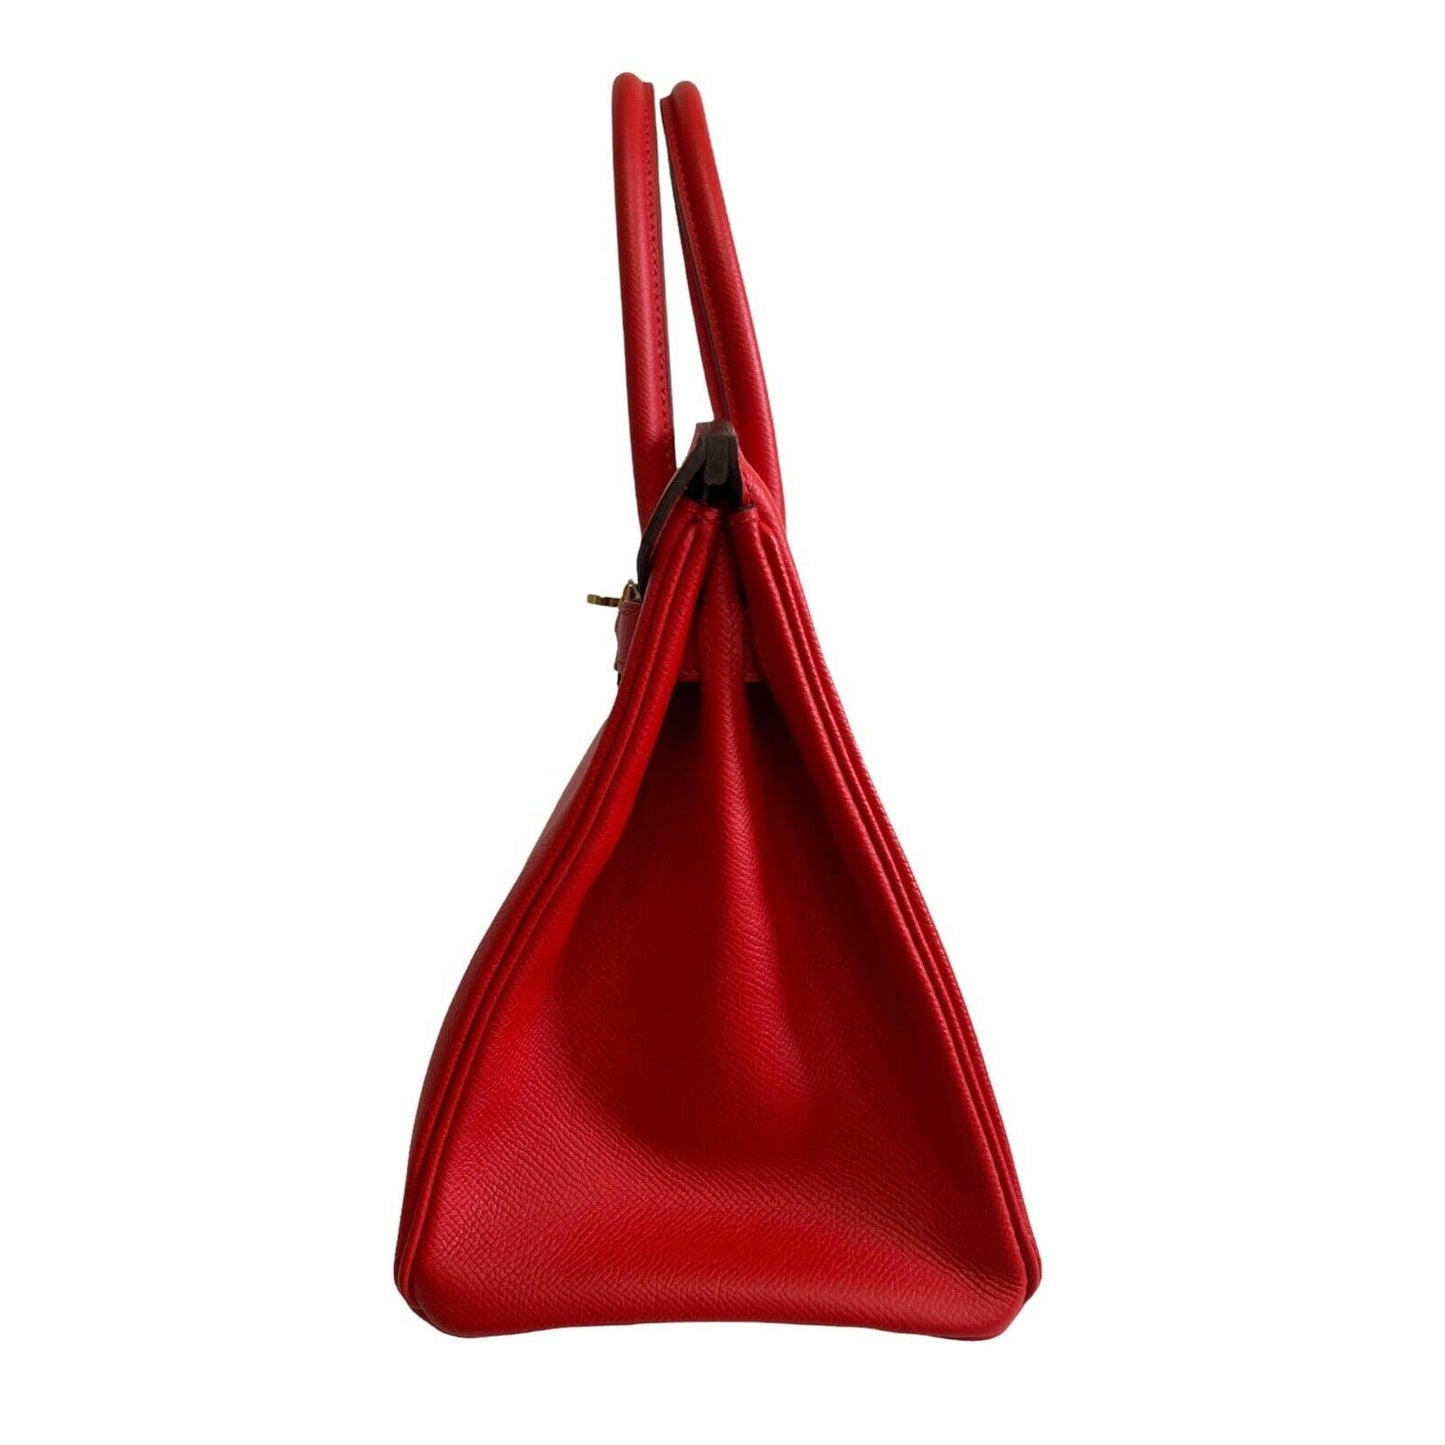 Hermes Birkin 30 Rouge de Coeur Red Epsom Leather Gold Hardware Bag Handbag 2019